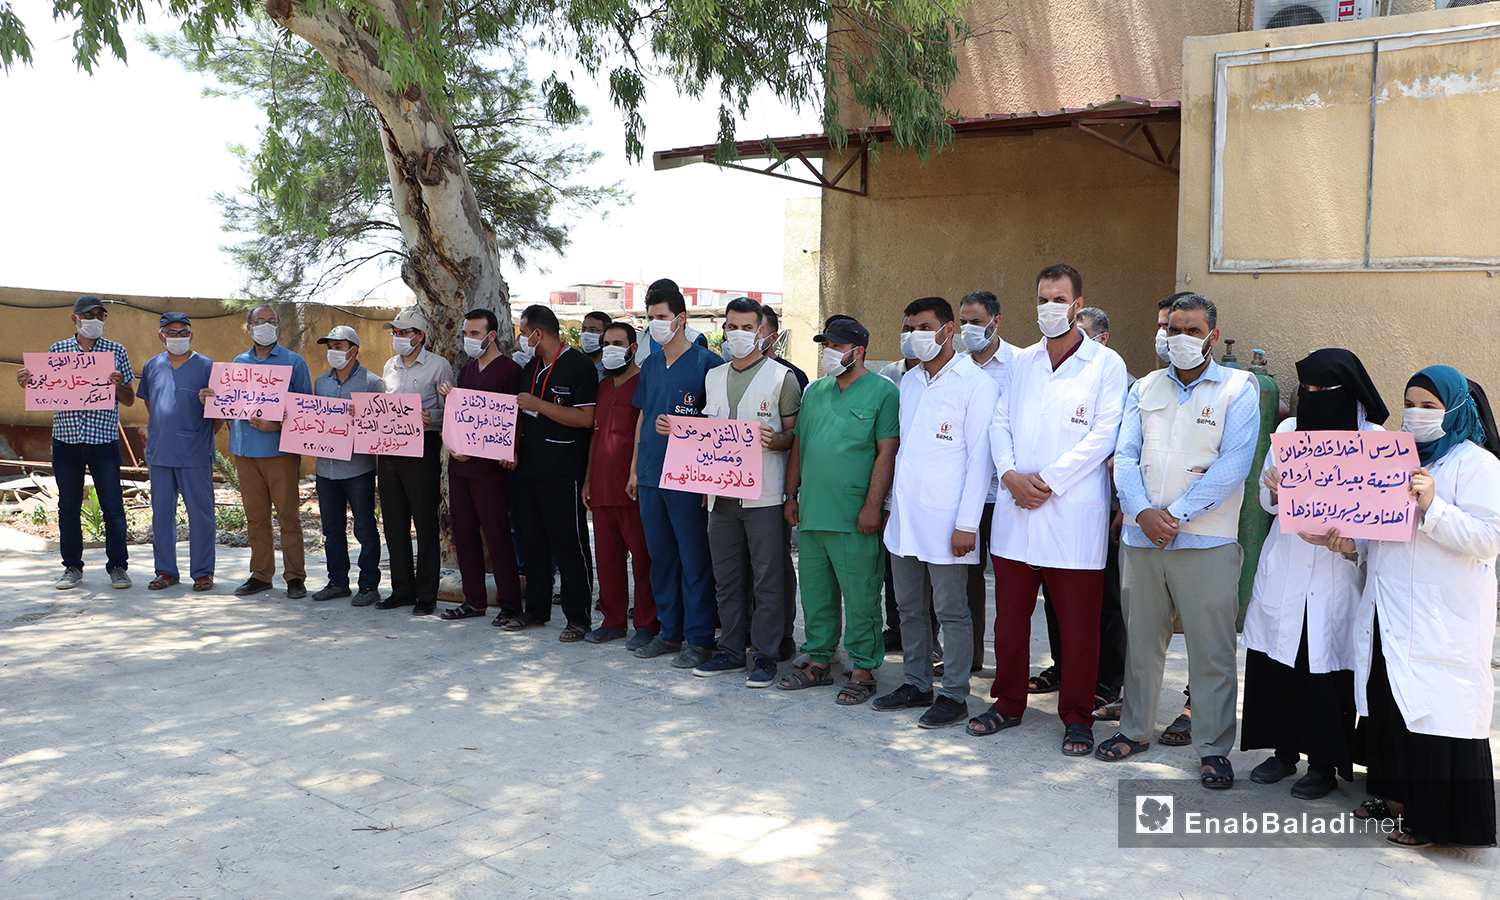 وقفة احتجاجية ضد لاعتداءات العكسرية على المراكز الطبية في مدينة الباب بريف حلب الشمالي - 5 من تموز 2020 (عنب بلدي/ عاصم الملحم)